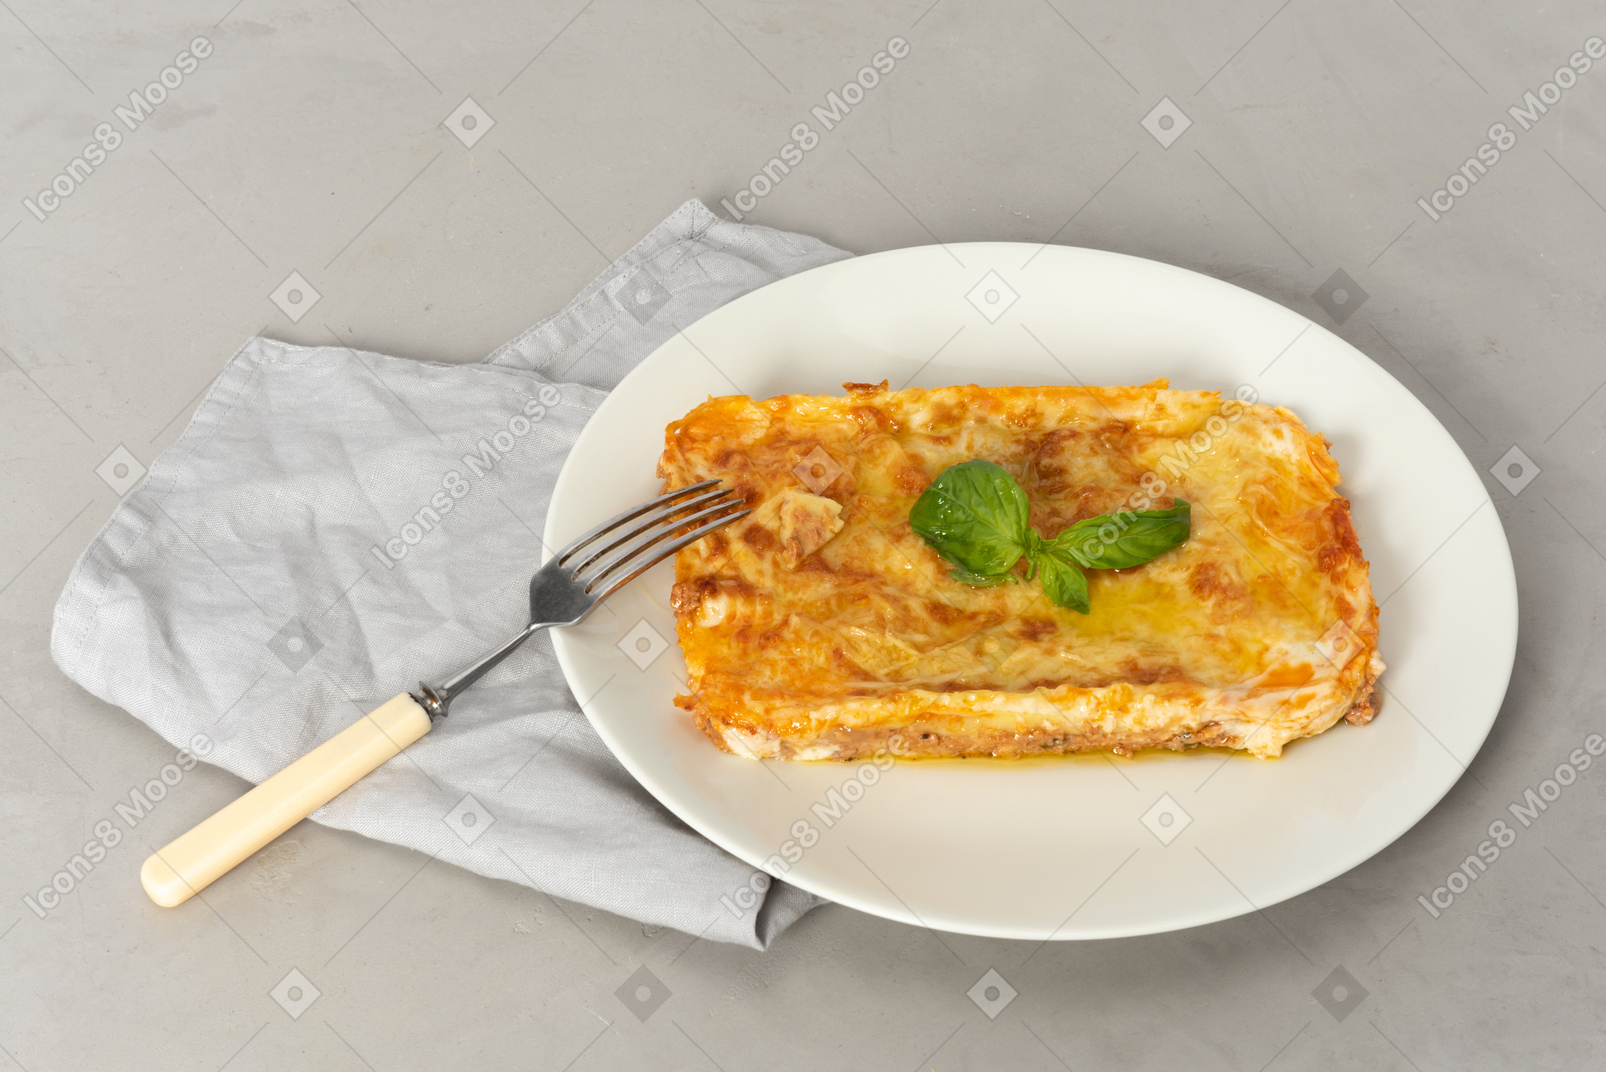 Les lasagnes doivent avoir un goût incroyable